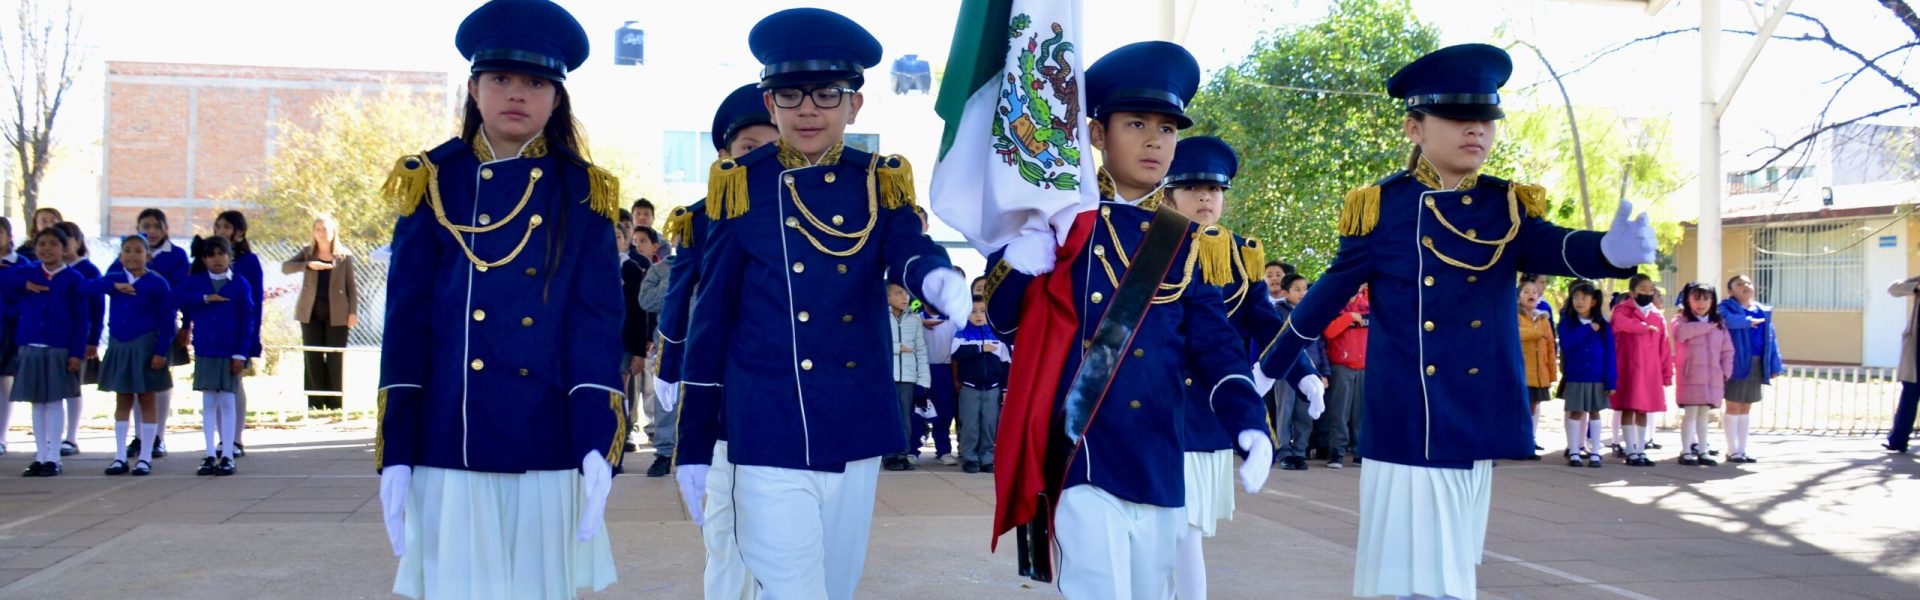 RECONOCE MUNICIPIO A ALUMNOS DESTACADOS DE LA PRIMARIA “PRESIDENTES DE MÉXICO”